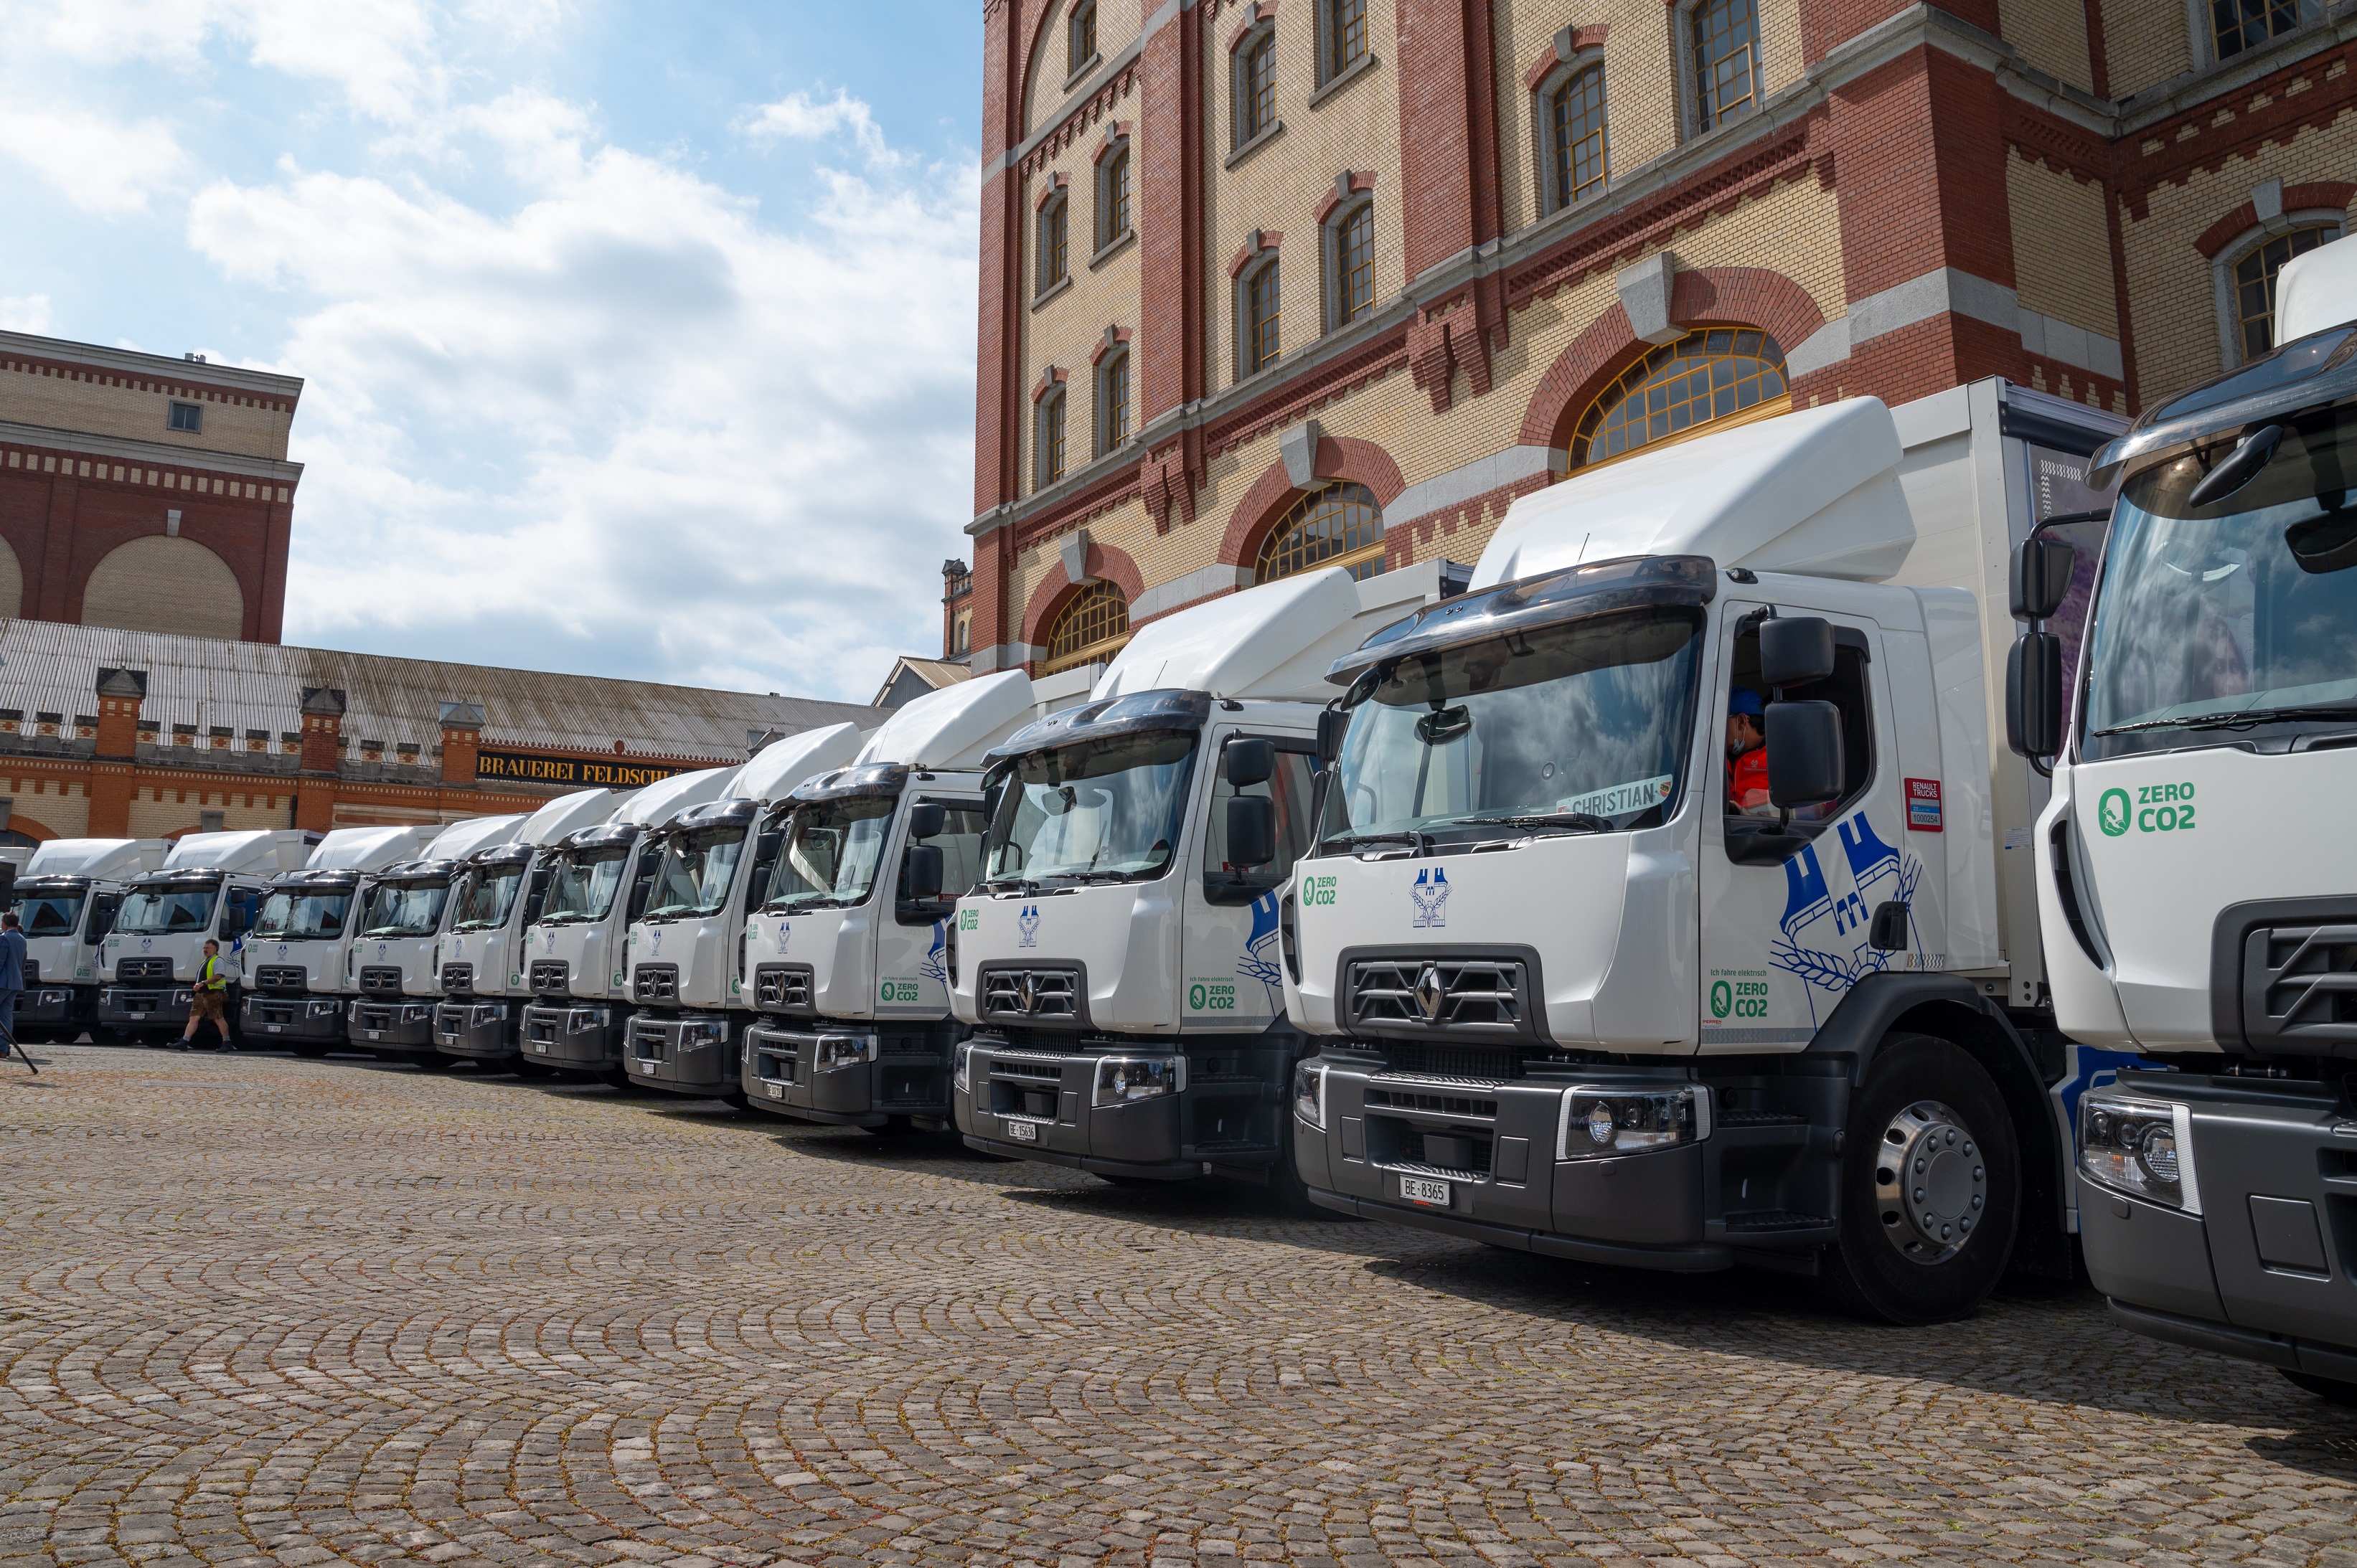 France Boissons s'équipe de 10 camions électriques